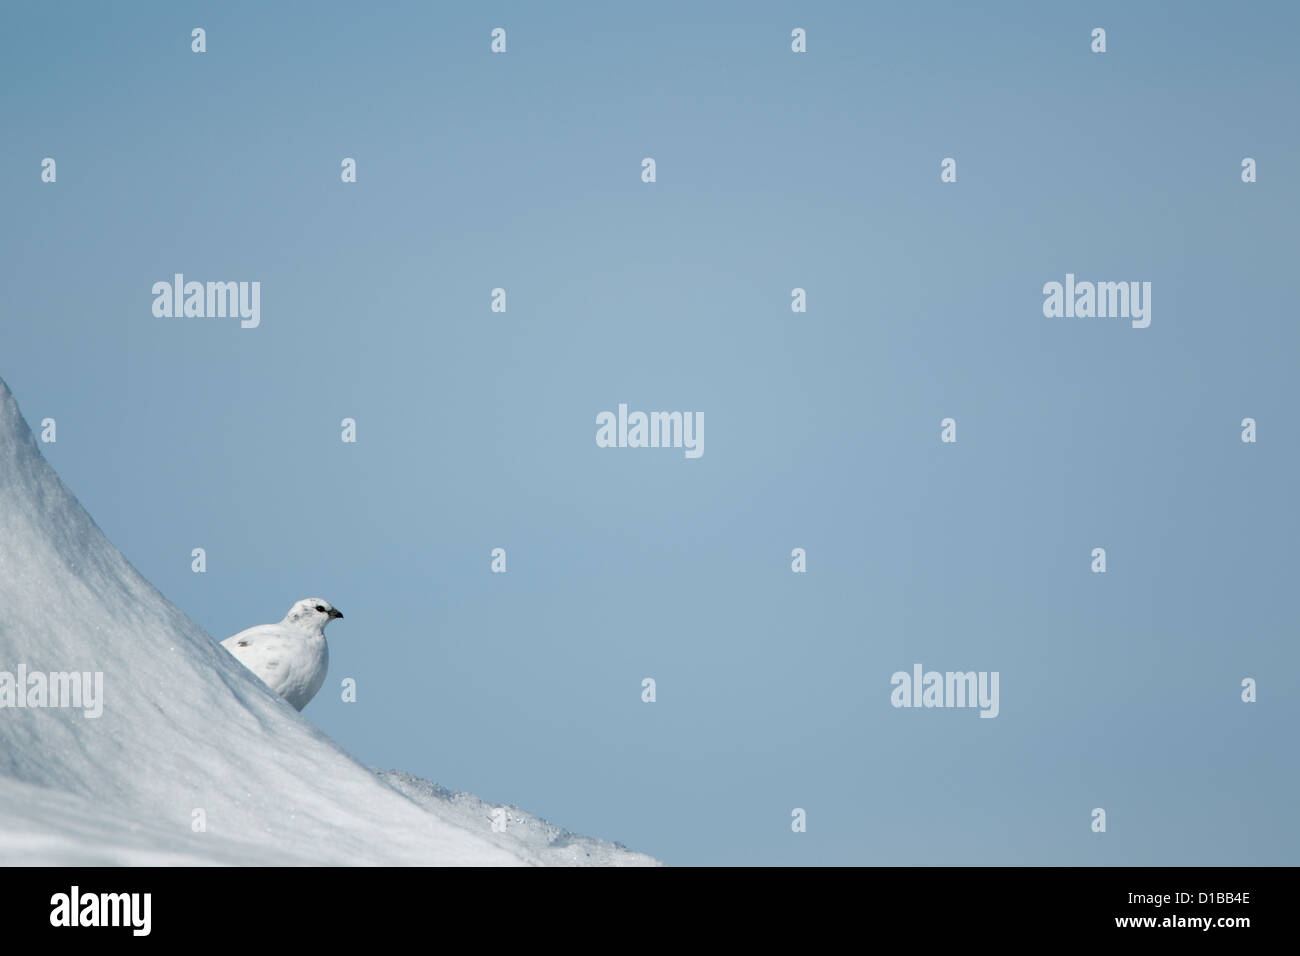 Le lagopède alpin (Lagopus mutus) femelle sur une colline couverte de neige partiellement masquée et à plus d'un banc de neige Banque D'Images